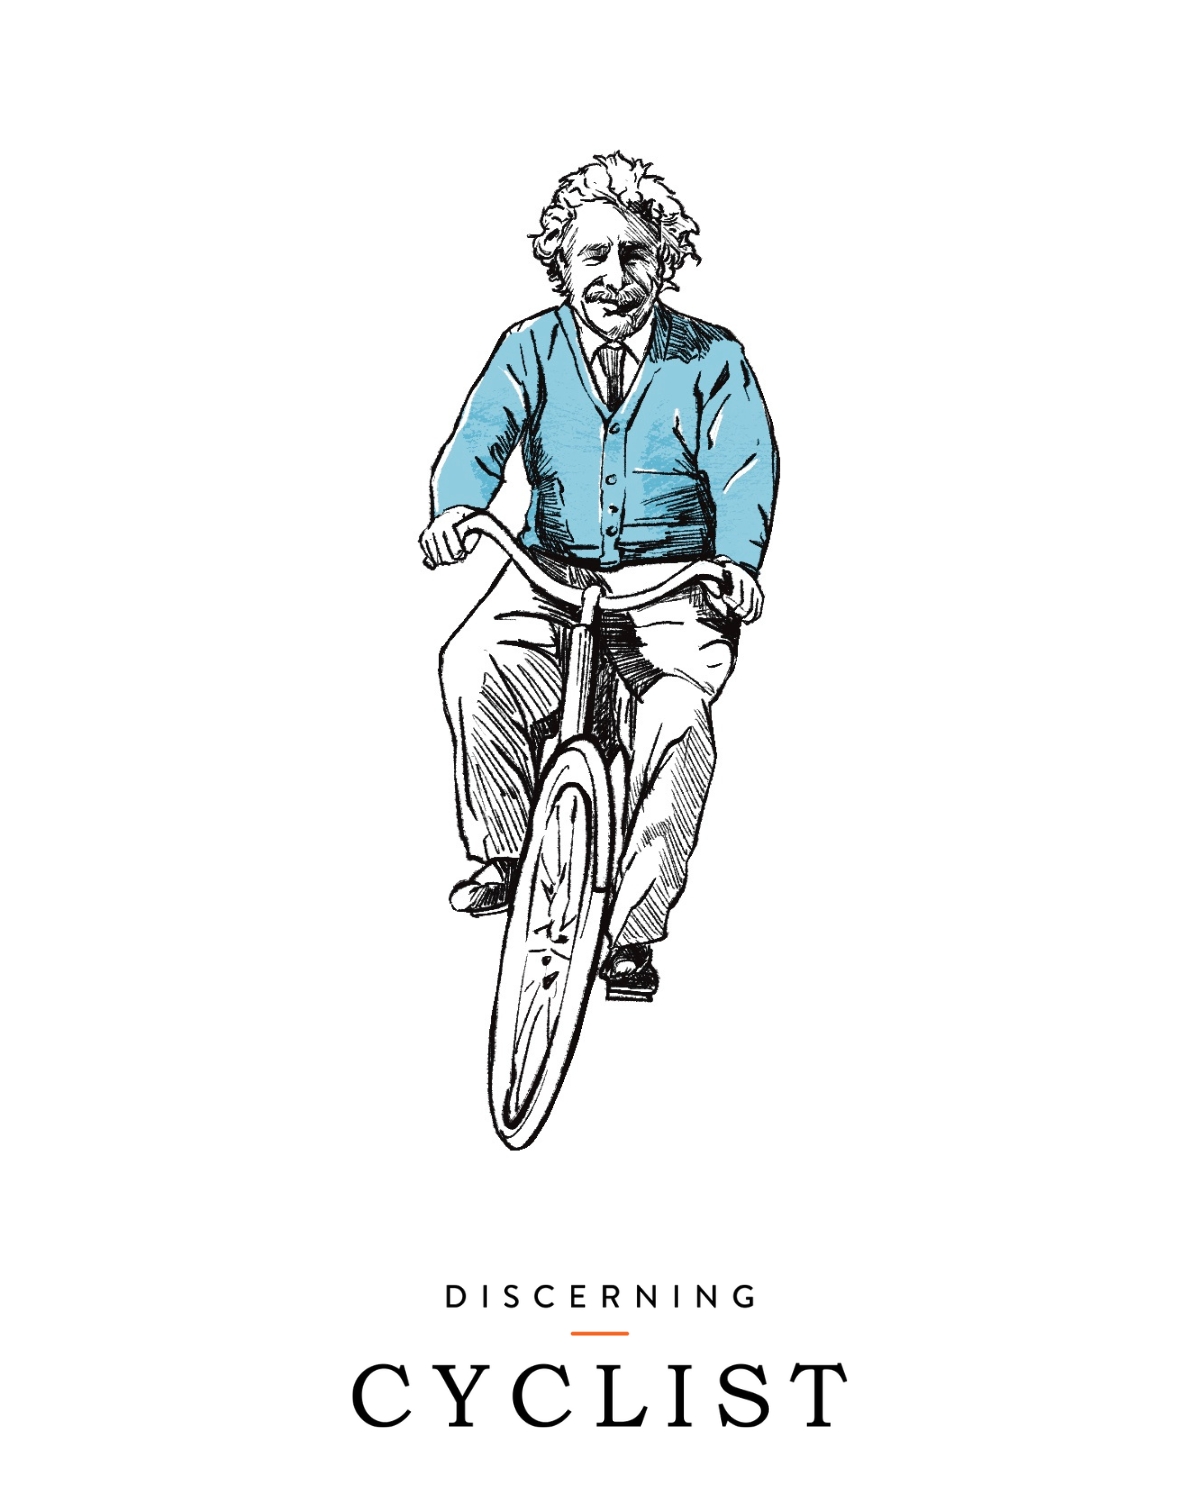 Albert Einstein cycling illustration